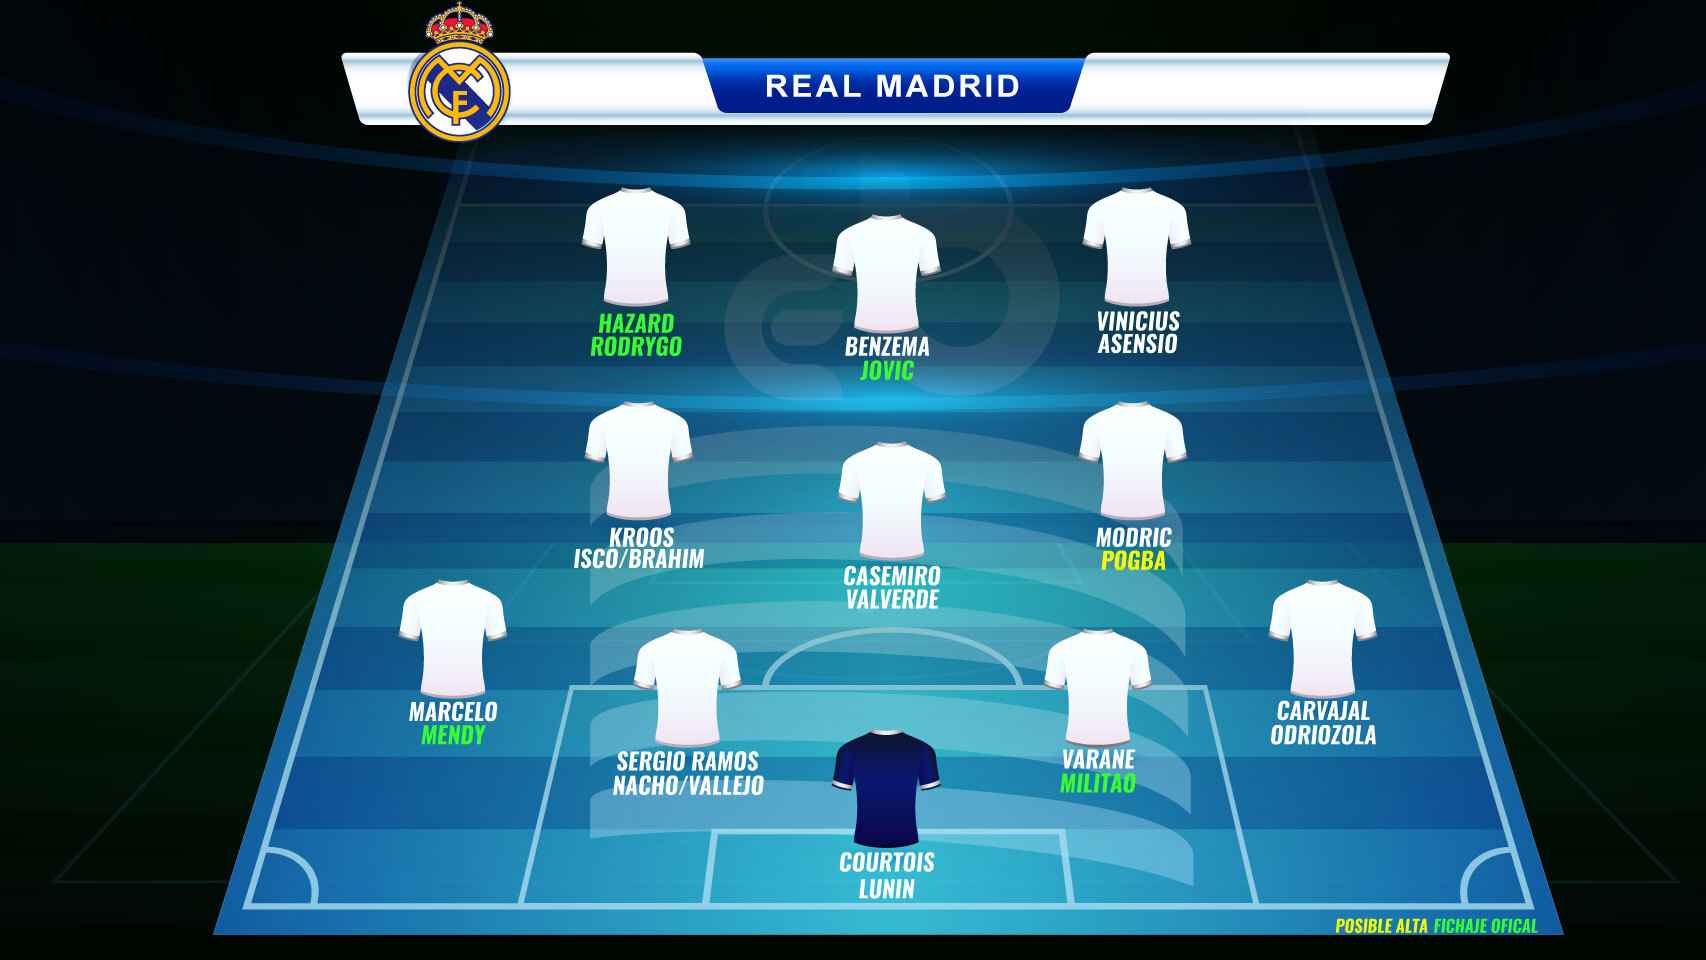 Las posibles alineaciones del Real Madrid 2019/20